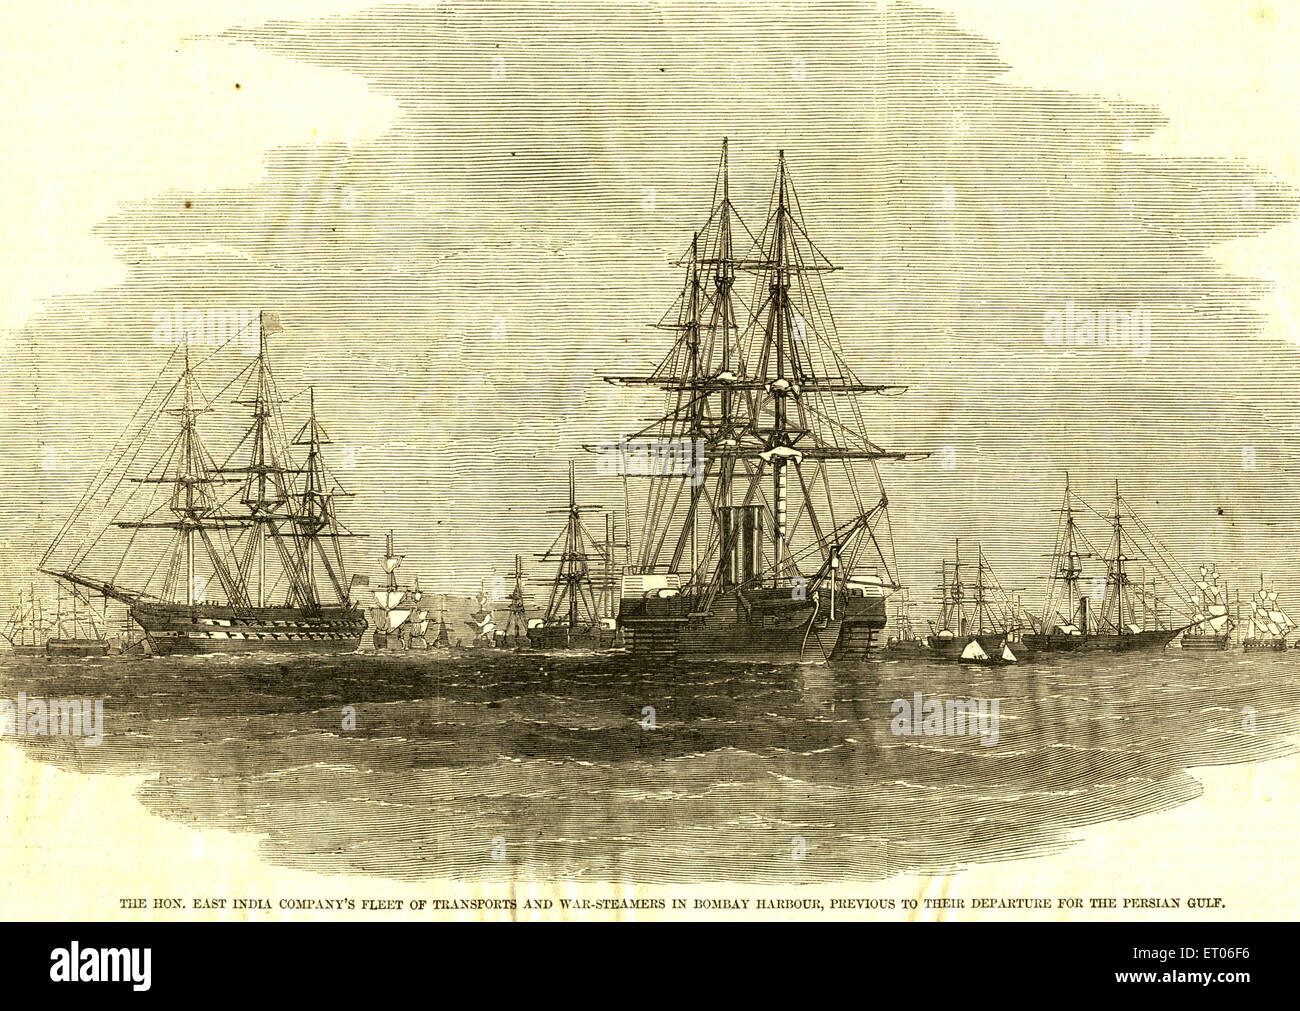 La flotta della East India Company di navi da trasporto e da guerra in porto ; Bombay ; Mumbai ; Maharashtra ; India ; Asia ; vecchia immagine del 1800 Foto Stock